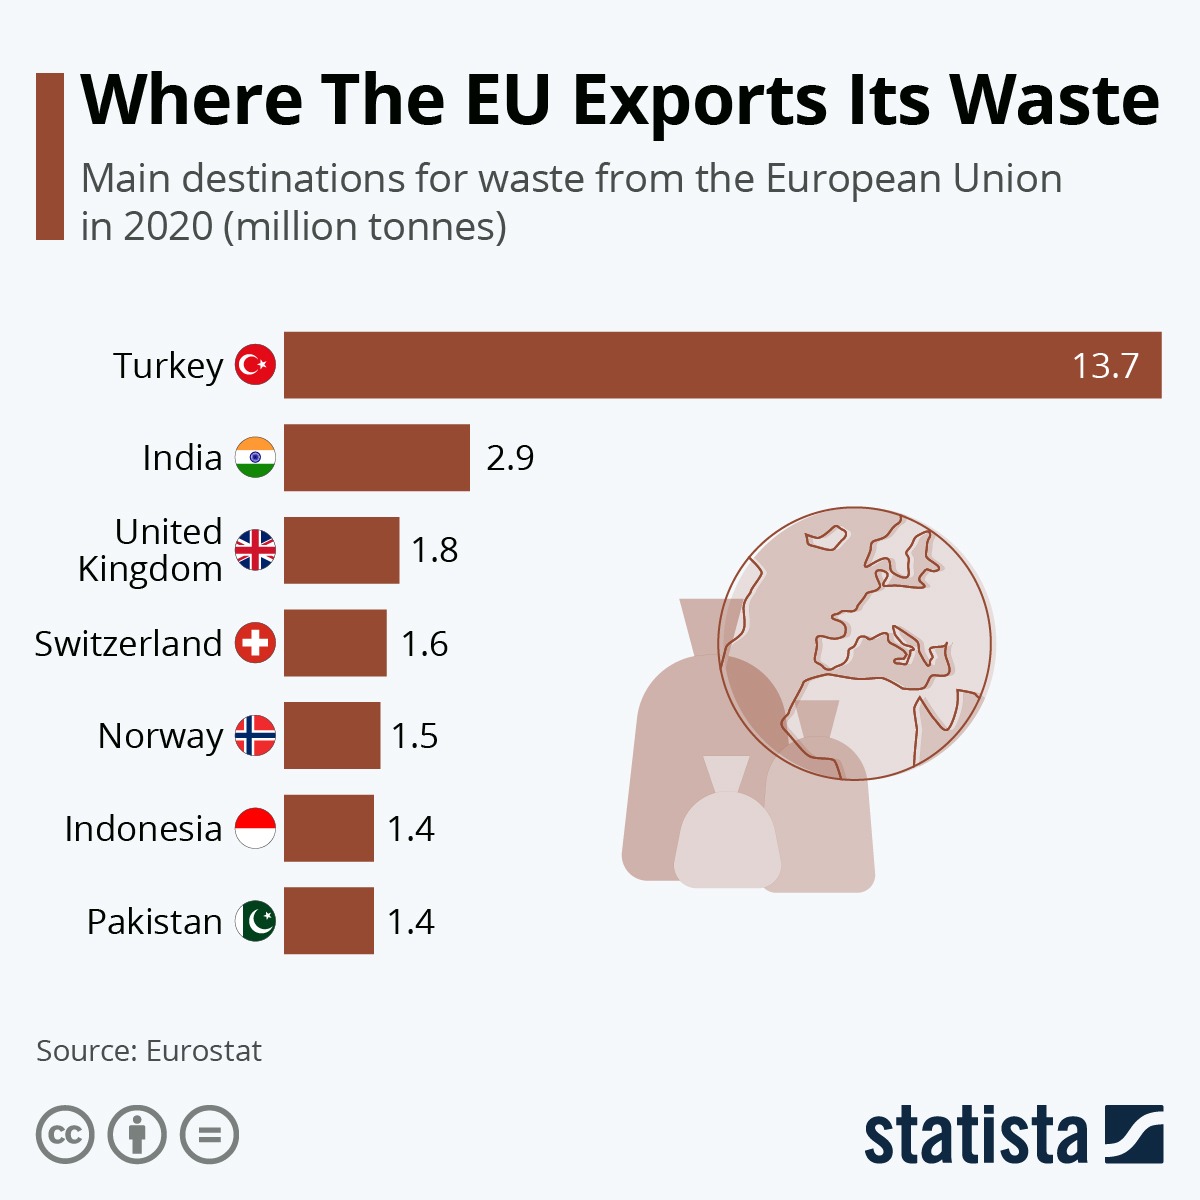 Mihin EU vie jätteensä. Euroopan unionin viemän jätteen tärkeimmät kohdemaat vuonna 2020 (miljoonia tonneja). Turkki 13,7 miljoonaa tonnia. Intia 2,9 miljoonaa tonnia. Yhdistyneet kuningaskunnat 1,8 miljoonaa tonnia. Sveitsi 1,6 miljoonaa tonnia. Norja 1,5 miljoonaa tonnia. Indonesia 1,4 miljoonaa tonnia. Pakistan 1,4 miljoonaa tonnia. 